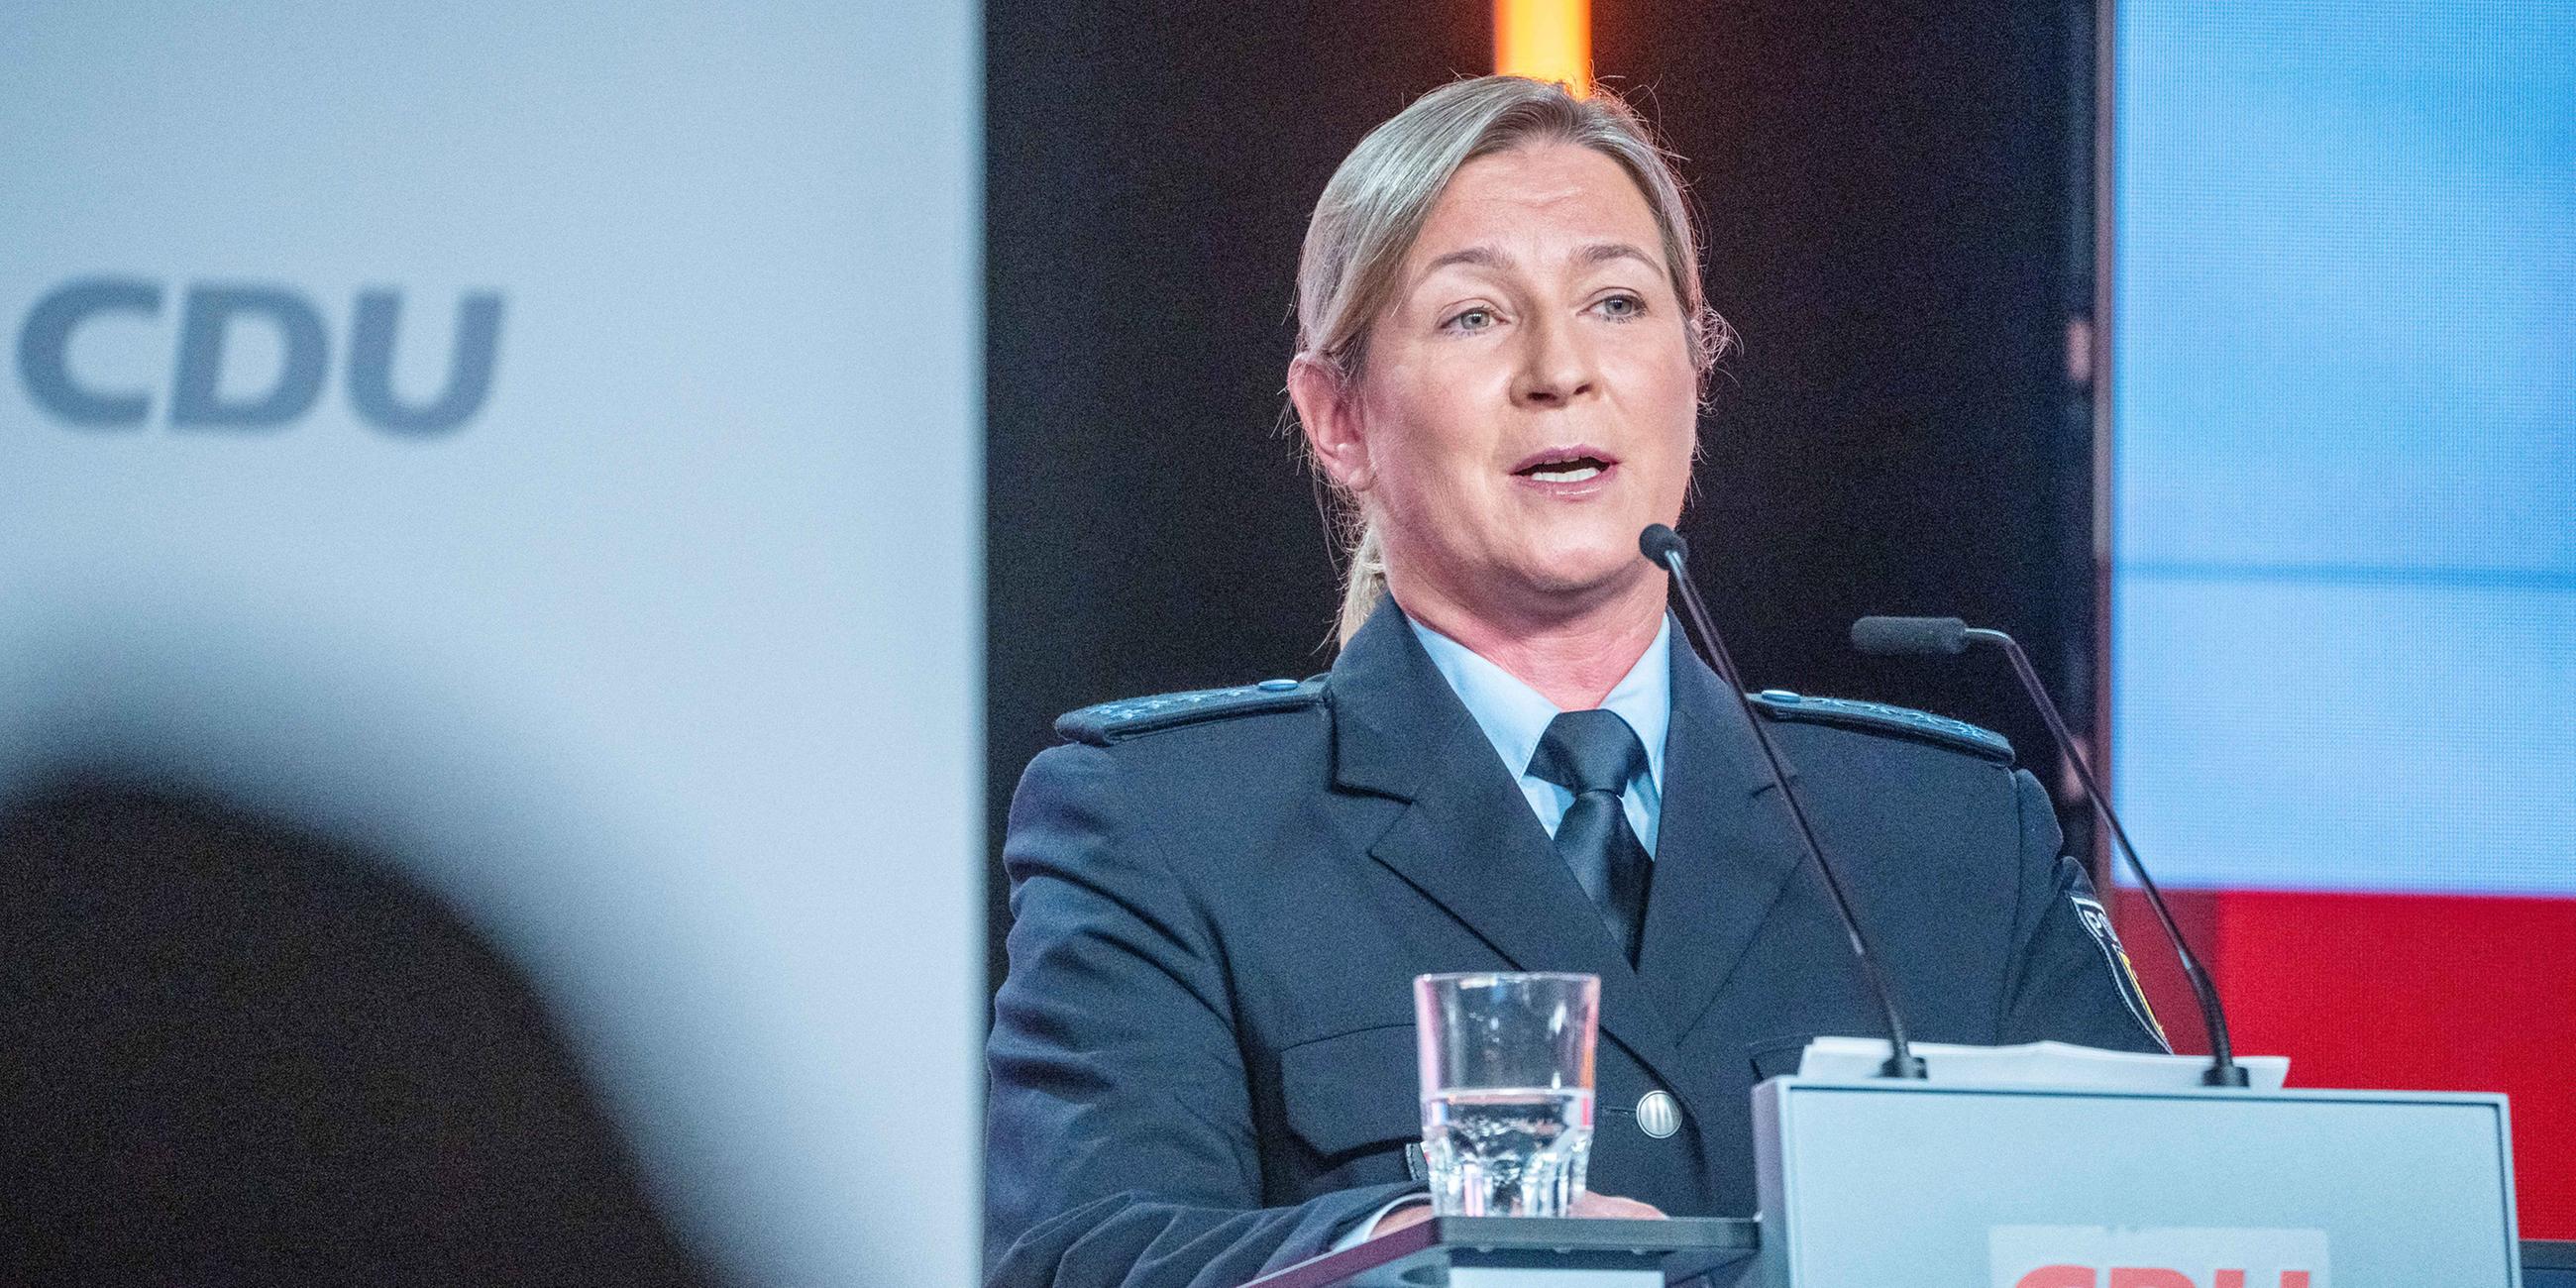 Claudia Pechstein spricht in ihrer Uniform als Bundespolizistin beim CDU-Grundsatzkonvent.